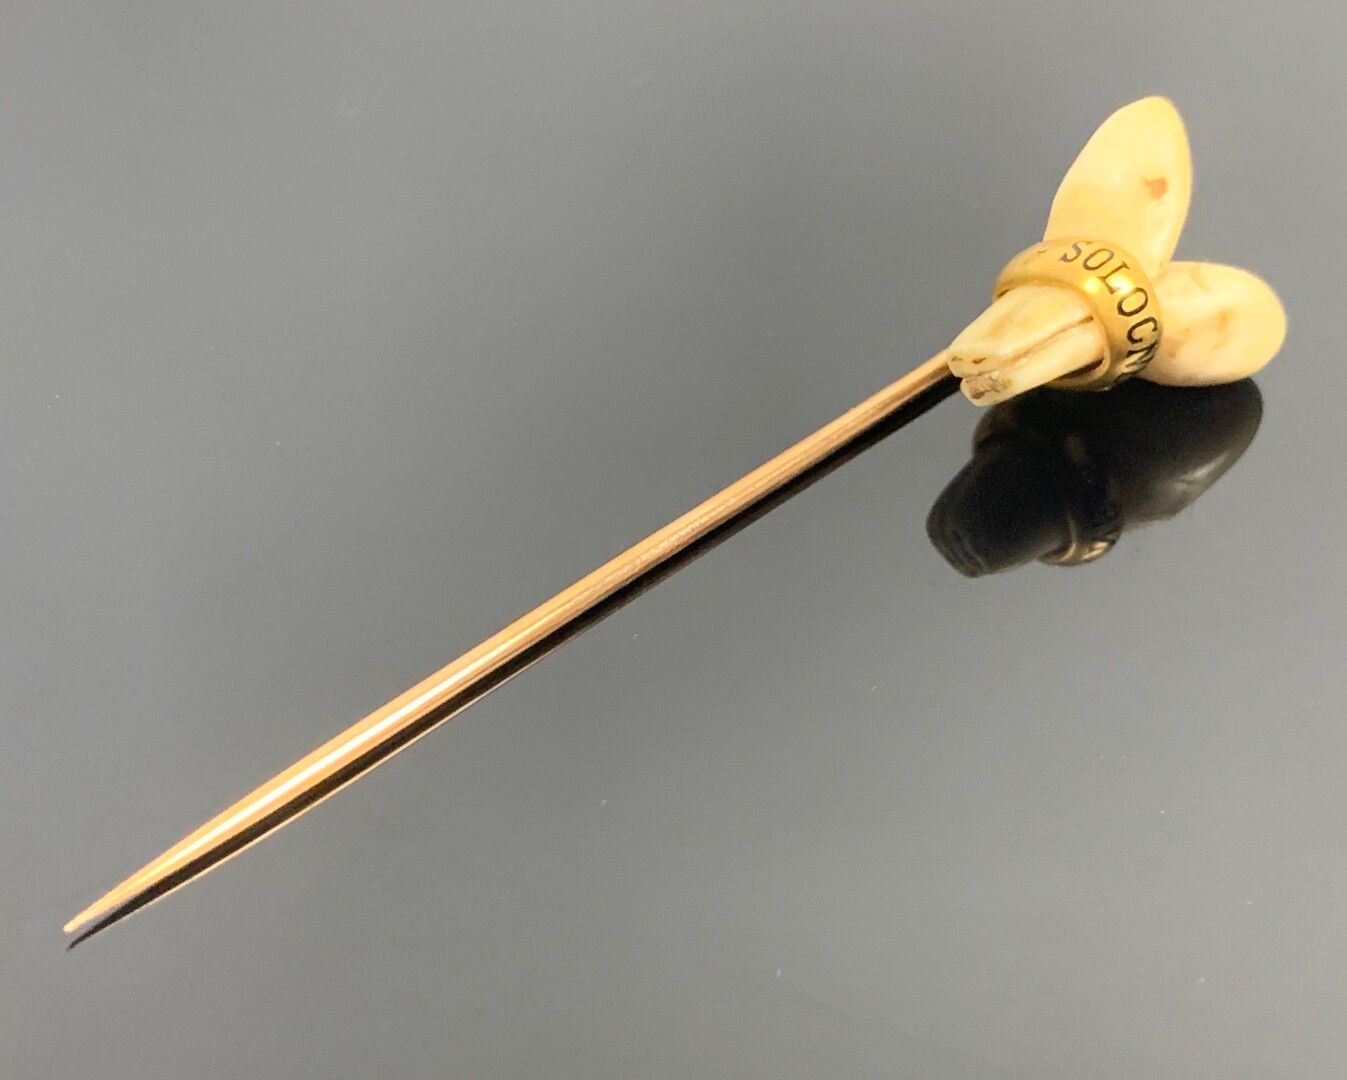 Null Venerie-Nadel aus Gelbgold mit Hirschhaken, graviert "Sologne".

L_7,8 cm.
&hellip;